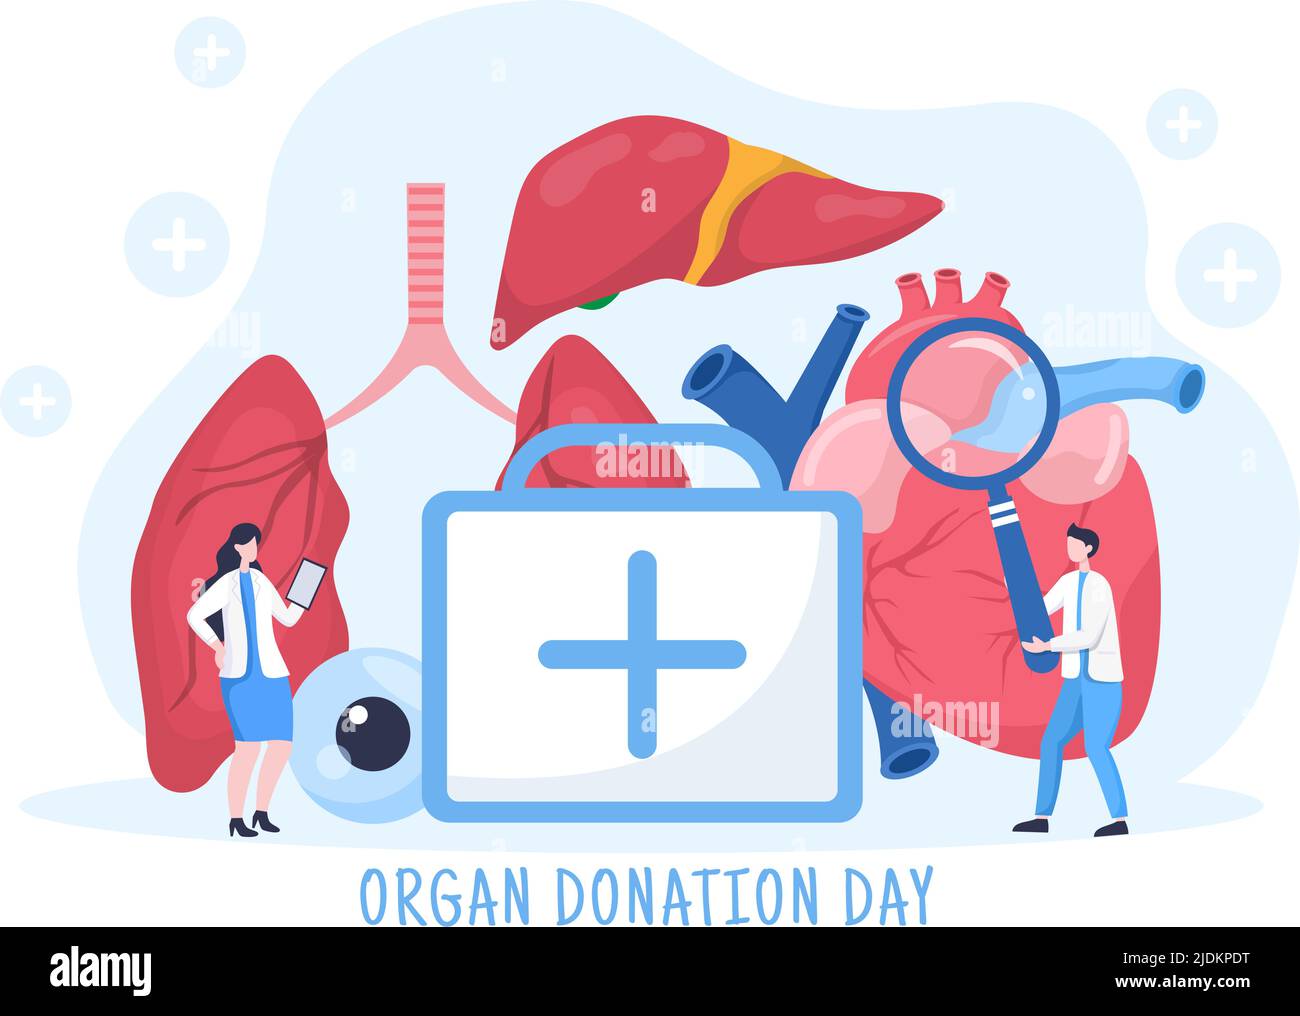 Welttag der Organspende mit Nieren, Herz, Lunge, Augen oder Leber zur Transplantation, Rettung von Leben und Gesundheitsversorgung in flacher Cartoon-Illustration Stock Vektor